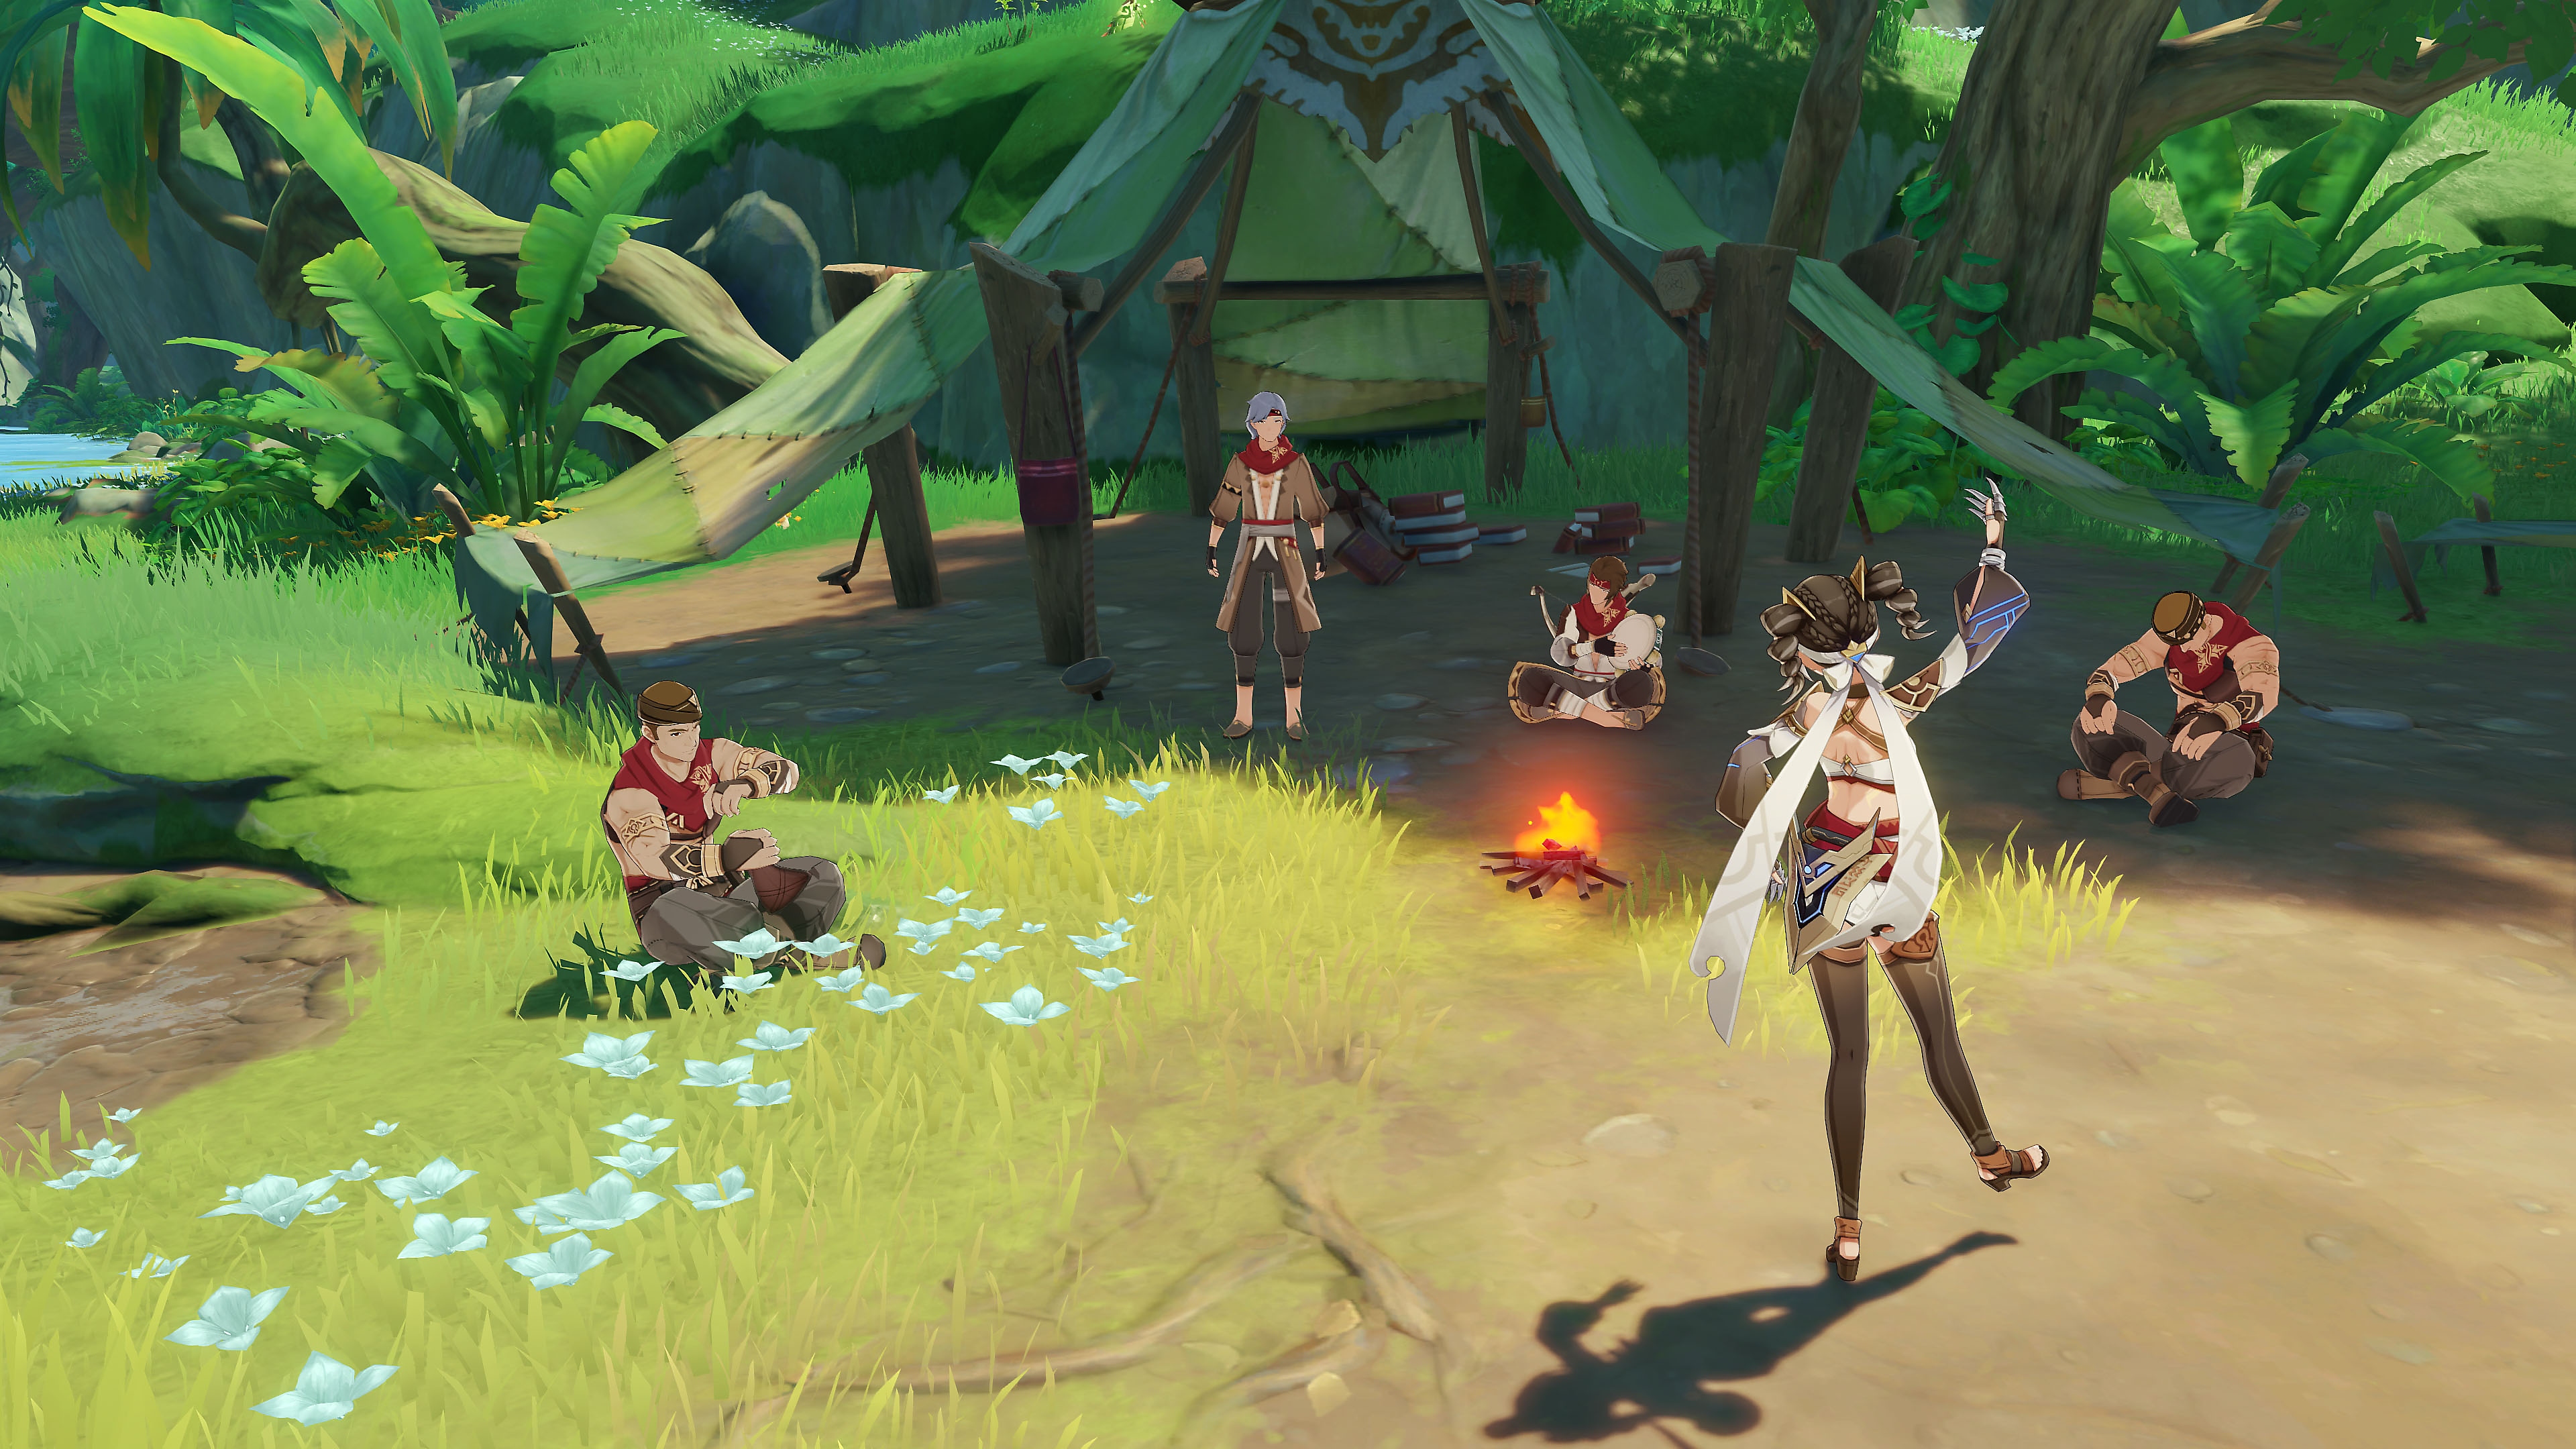 Impacto de GenShin: Captura de pantalla de la actualización 3.0 que muestra varios personajes sentados alrededor de una fogata